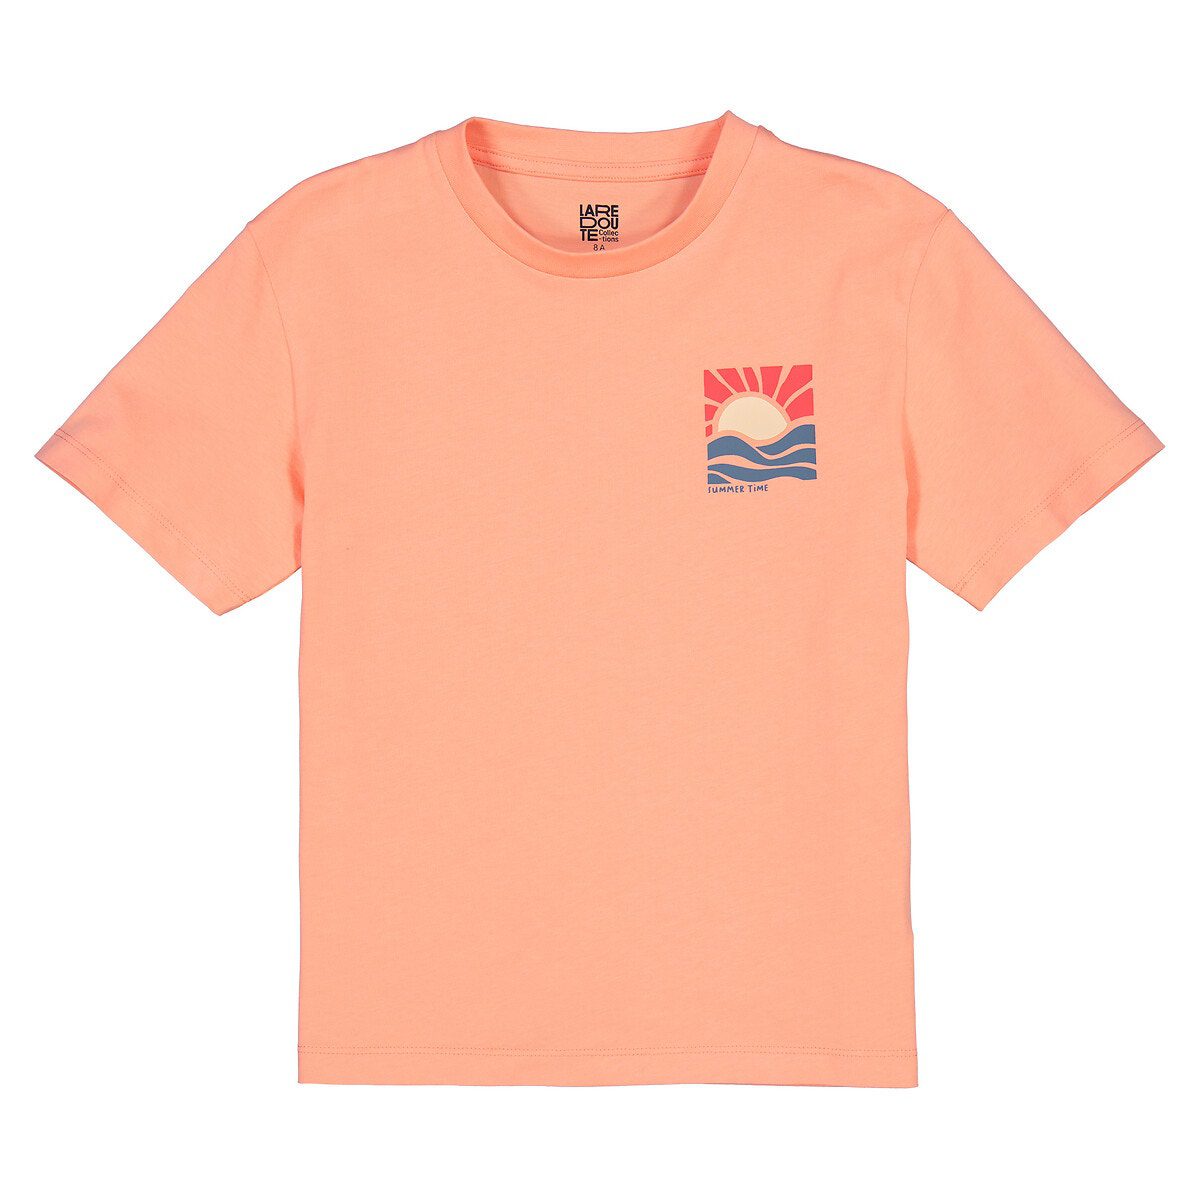 Κοντομάνικο T-shirt με στάμπα ηλιοβασίλεμα στην πλάτη Πορτοκαλι